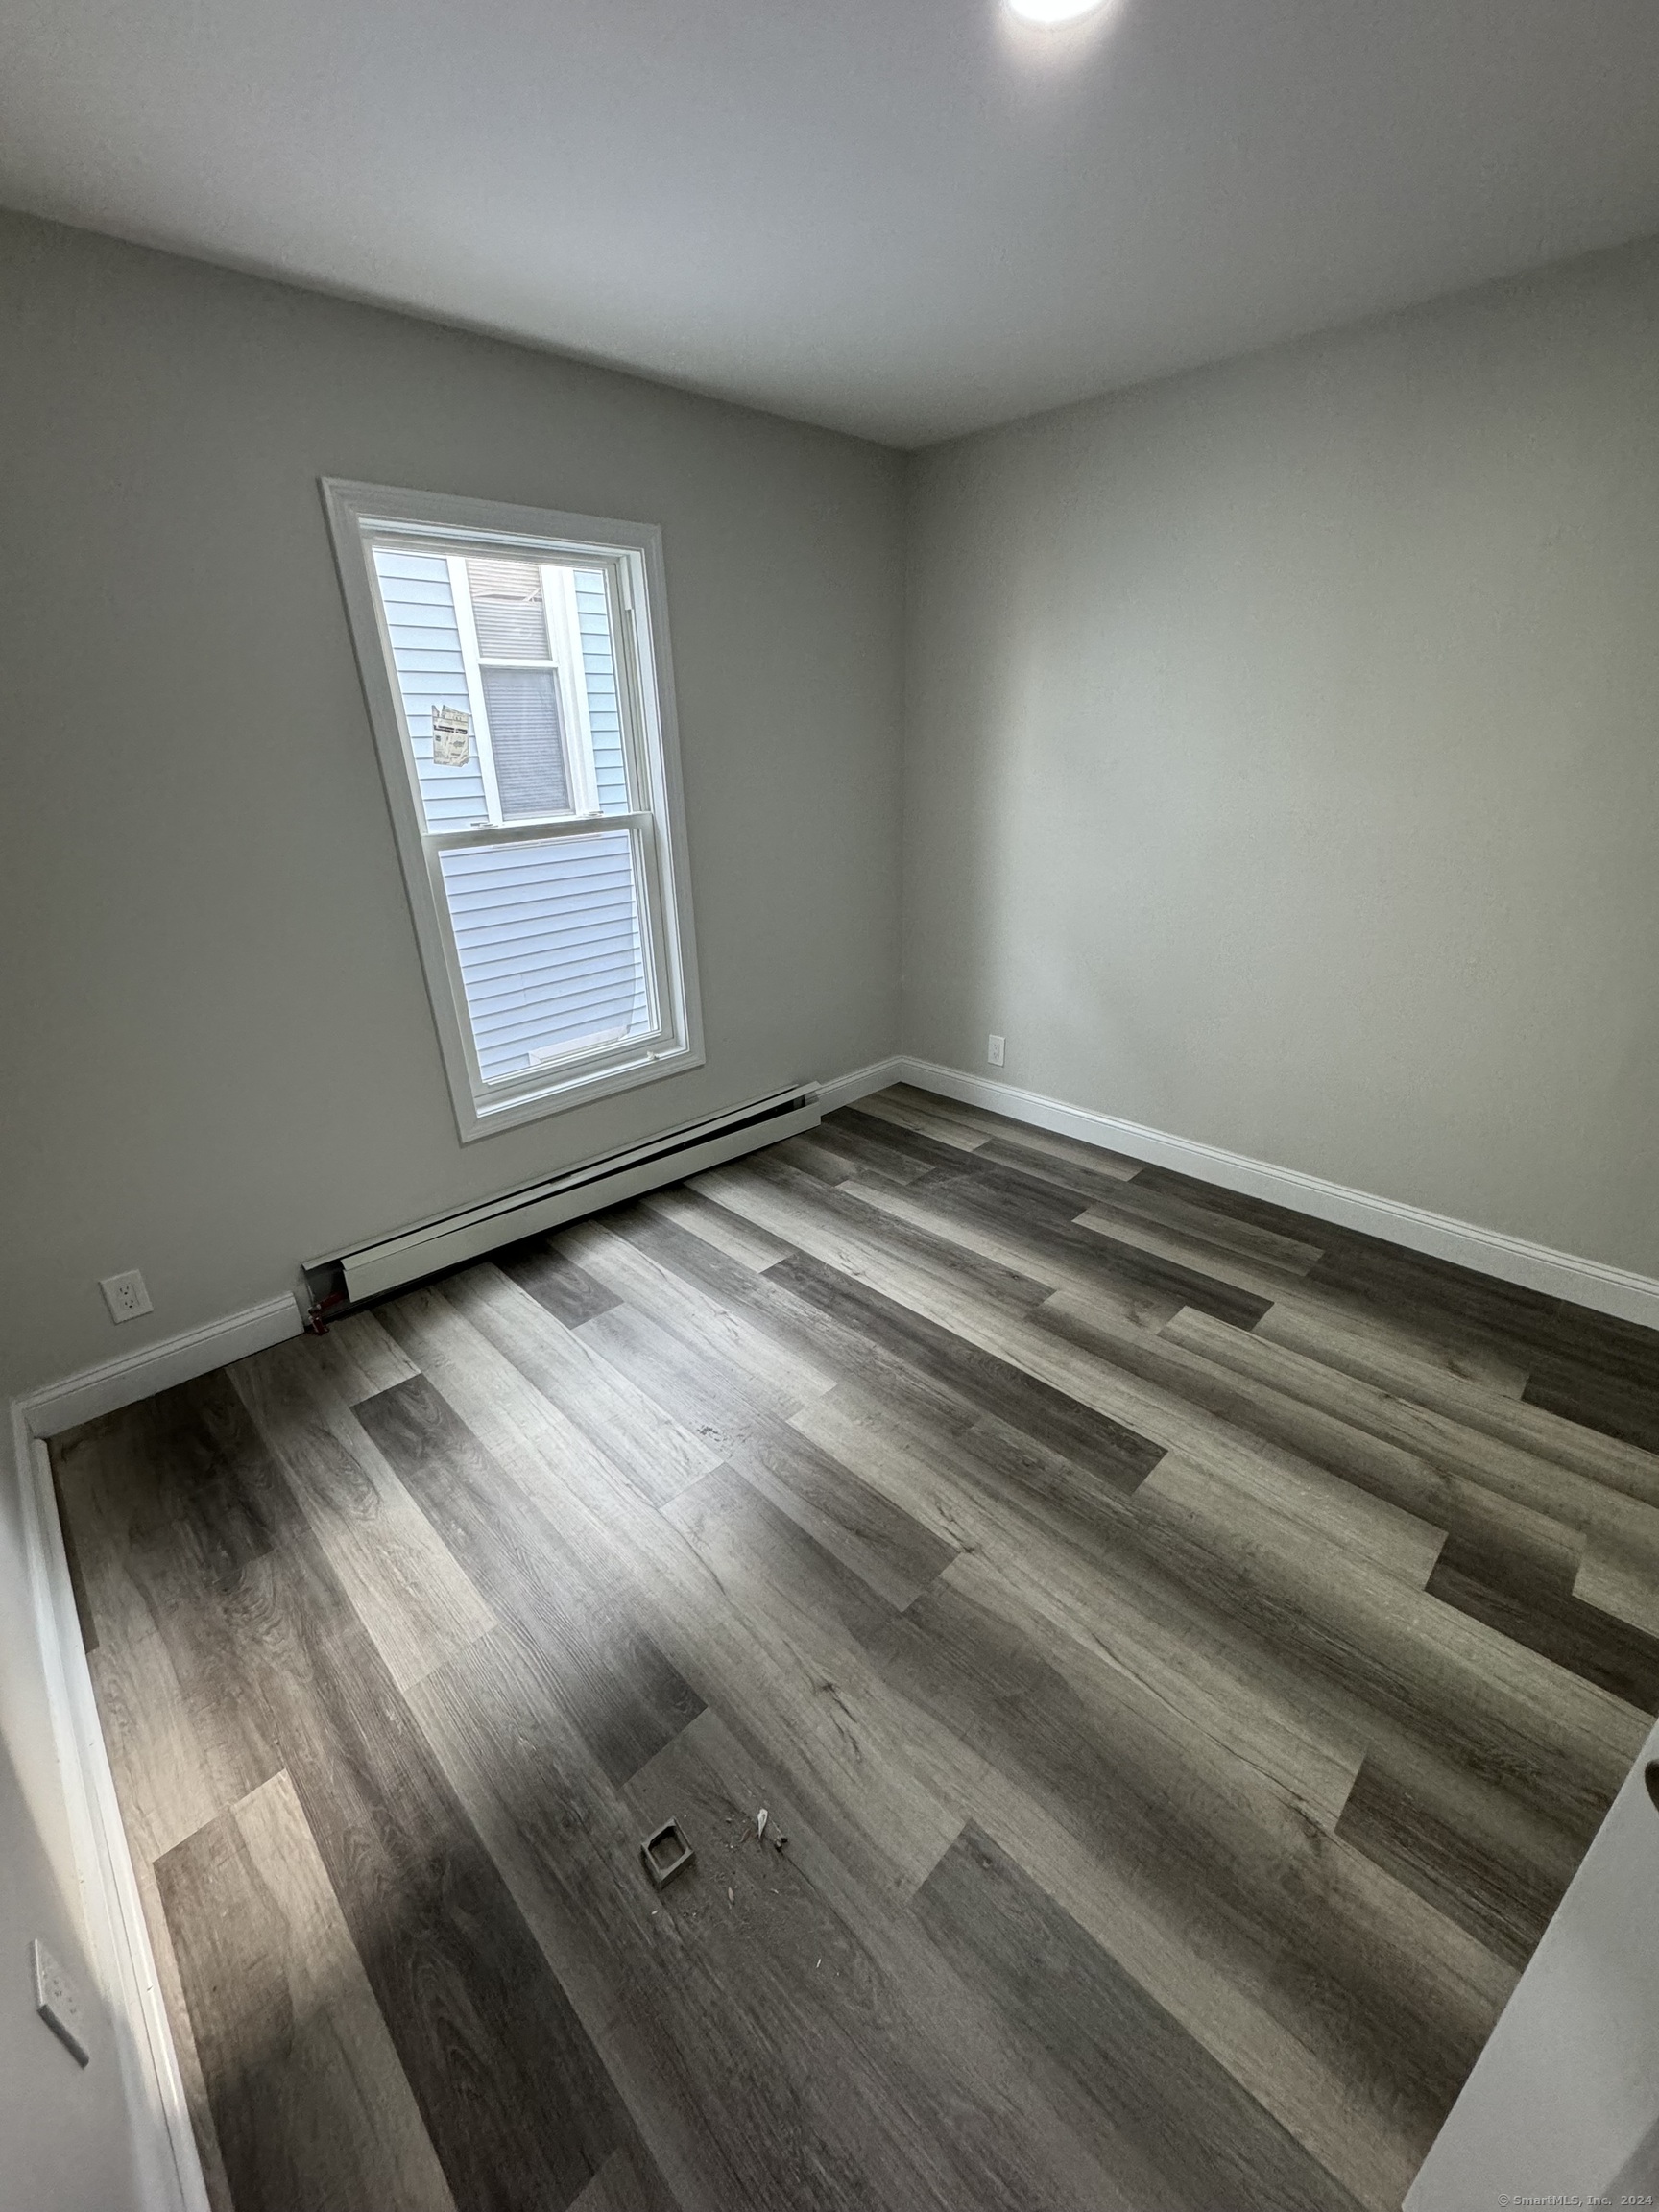 wooden floor in a room